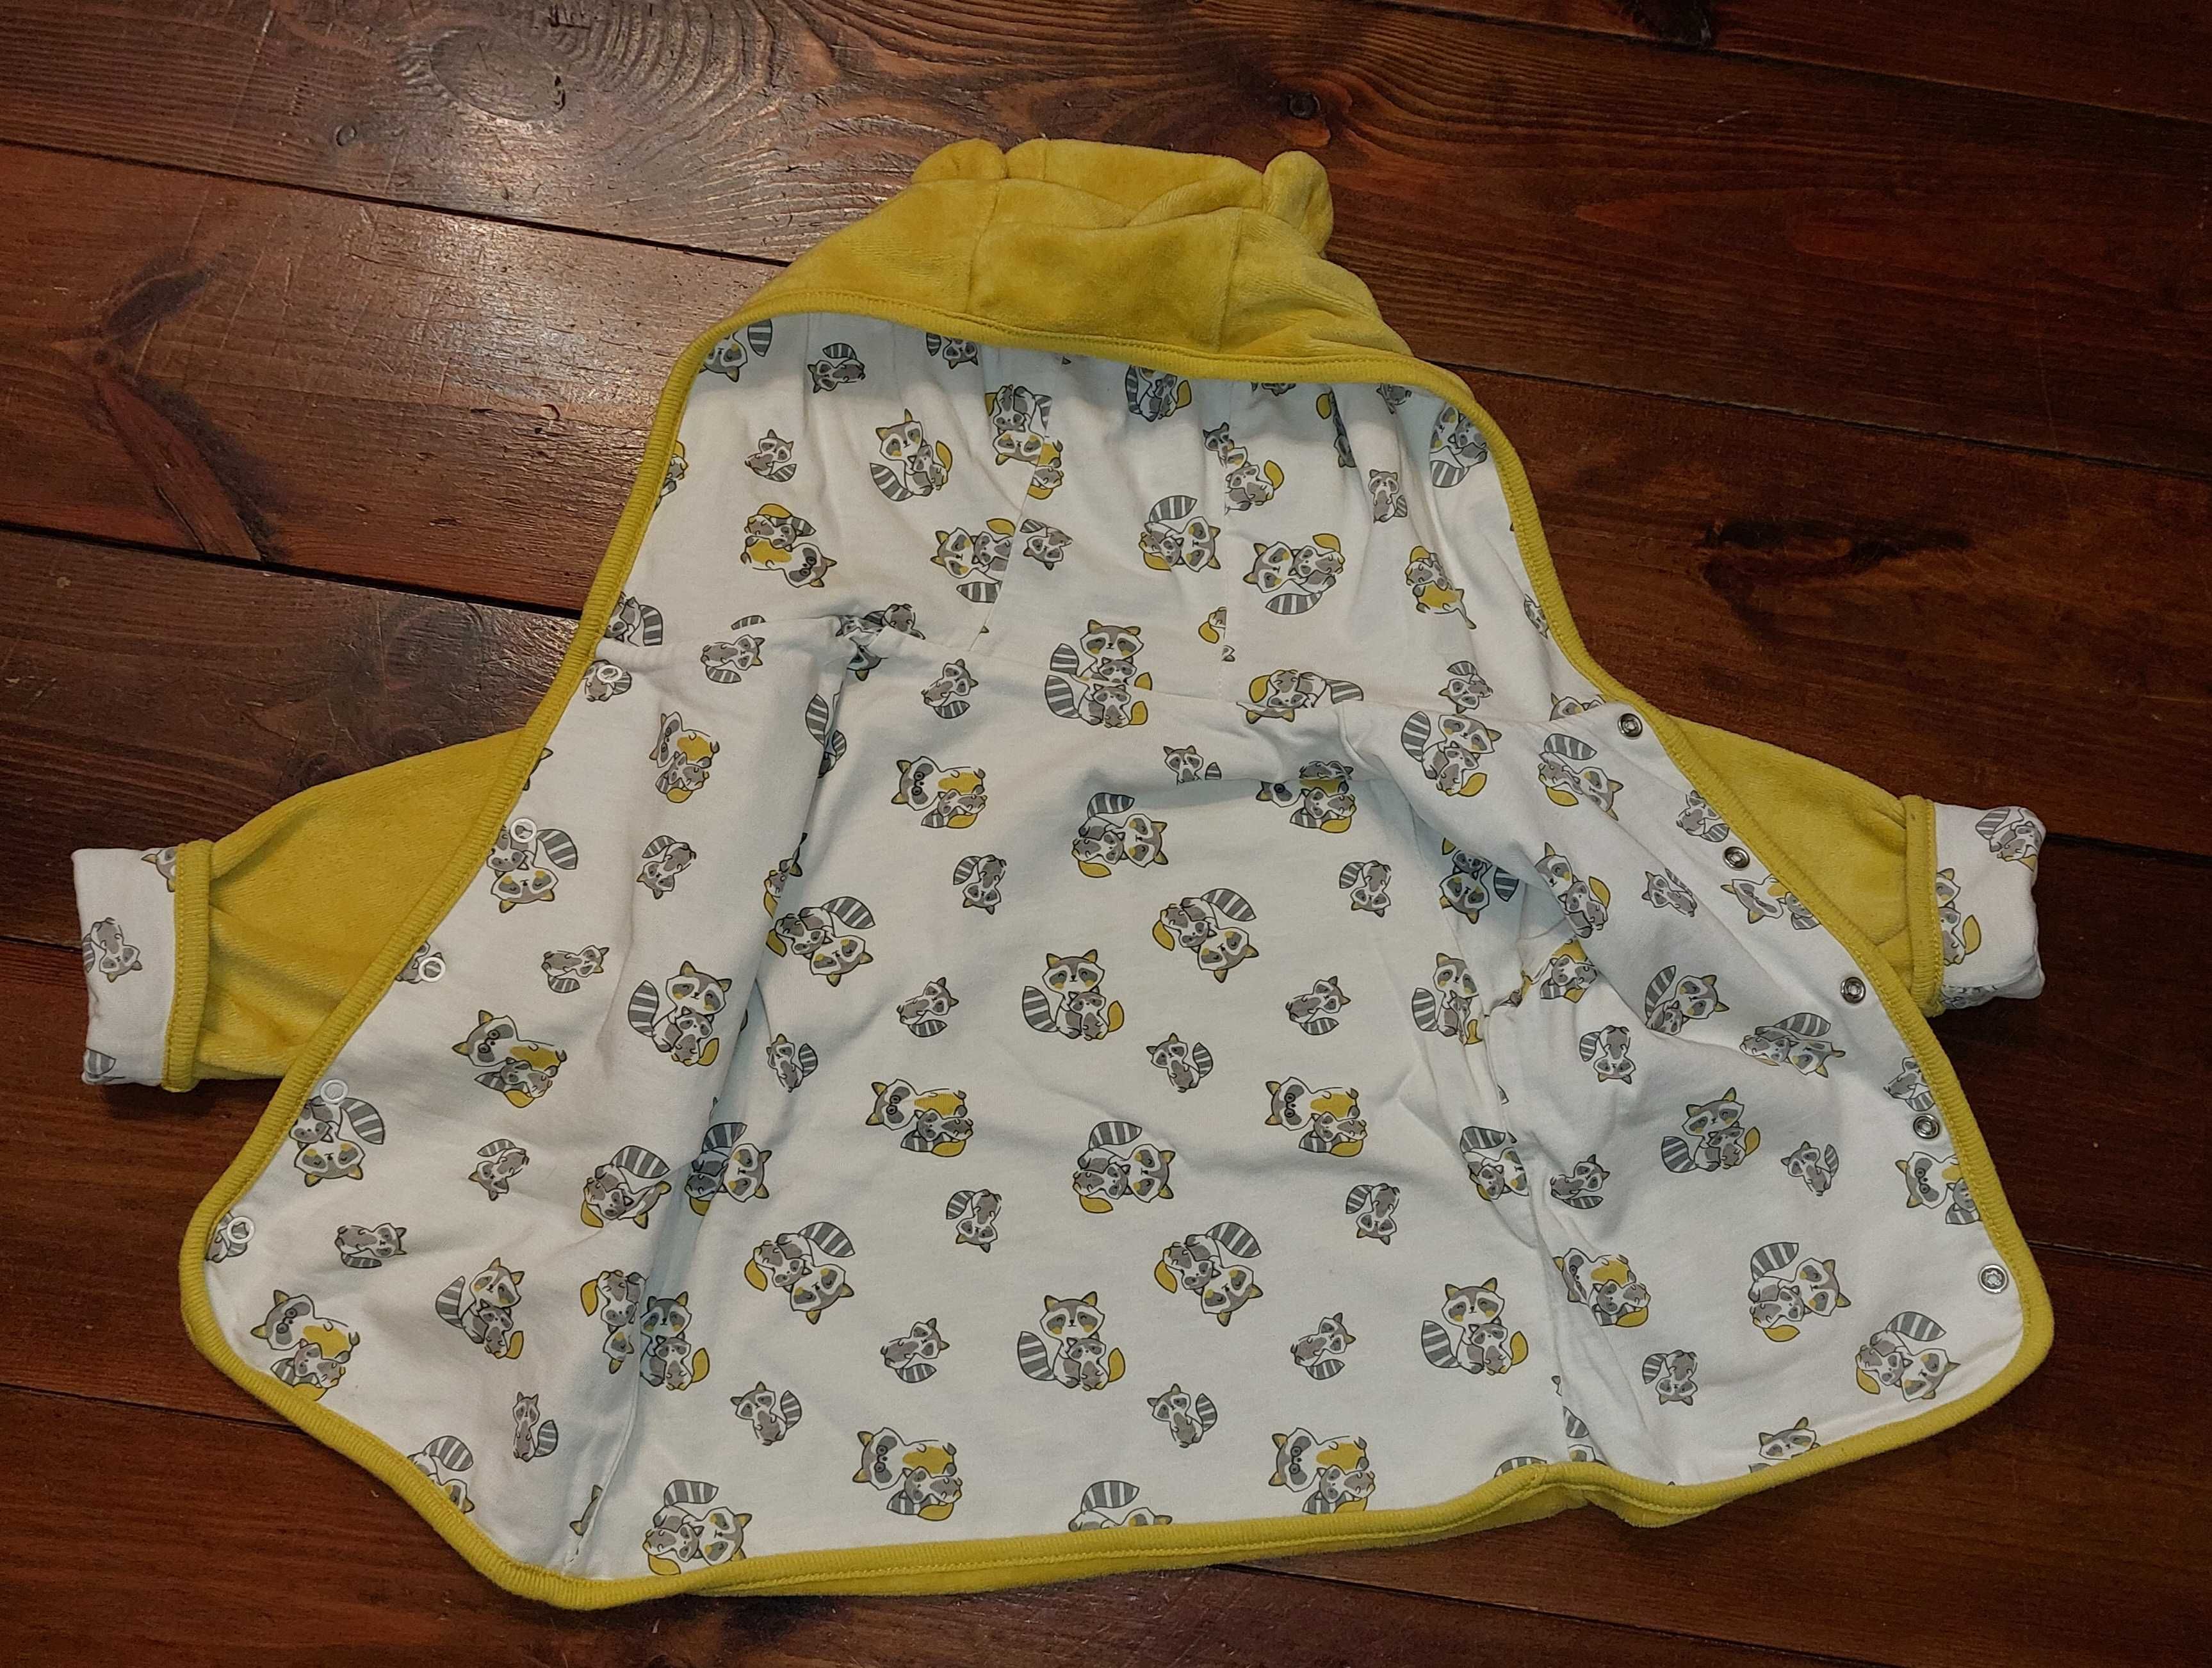 Cool Club, Bluza niemowlęca z kapturem, rozpinana, żółta, rozmiar 80